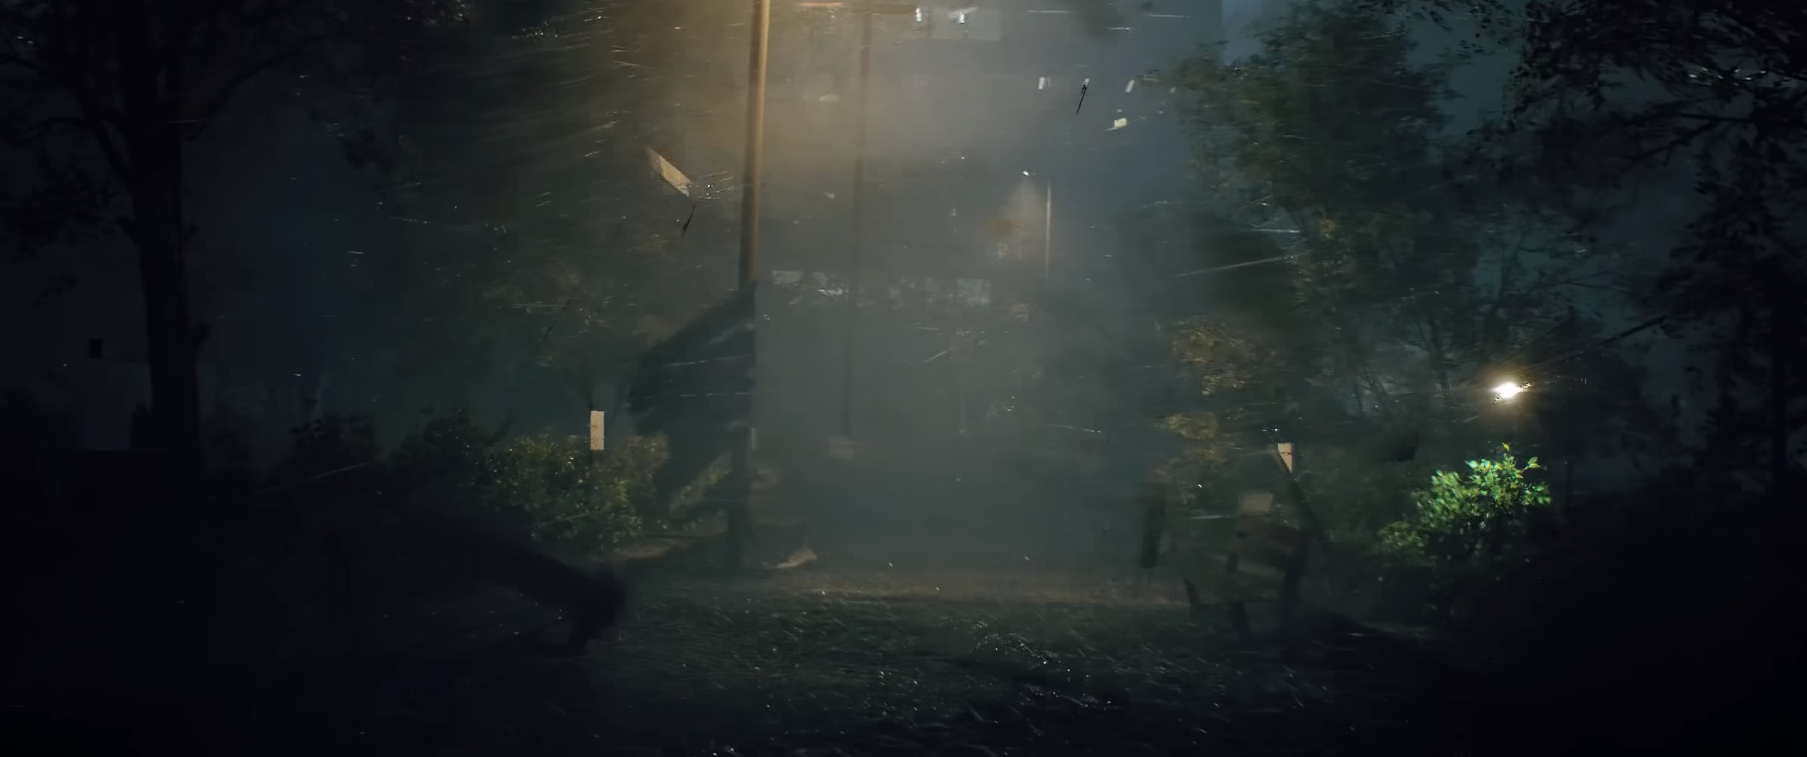 Image 1 : Vidéo : magnifique démo d'un ouragan dans Unreal Engine 4 !